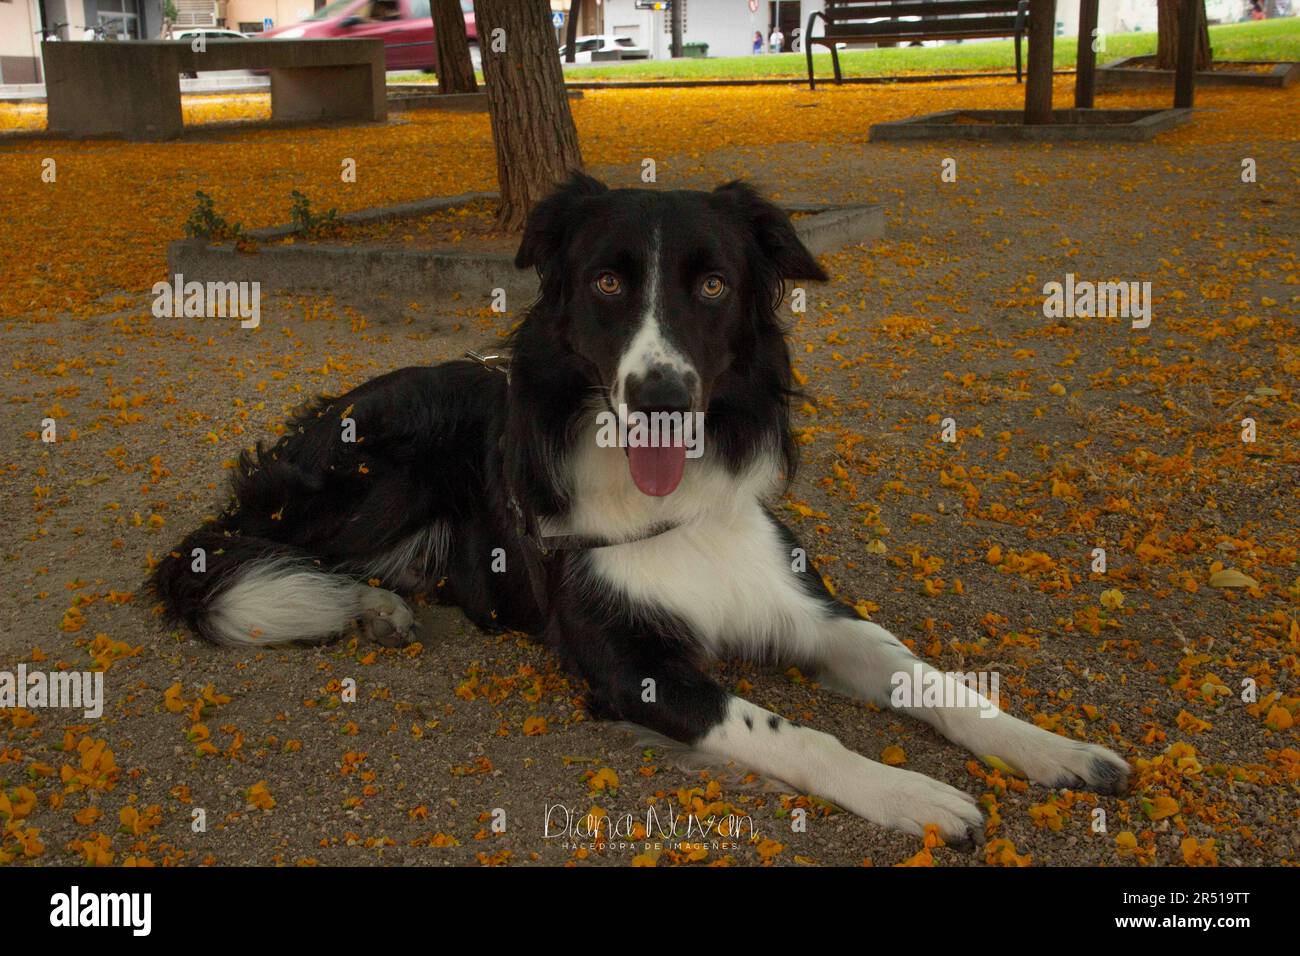 Amor canino, Border Collie, vida animal / Dog love, Border Collie, animal life / Stock Photo